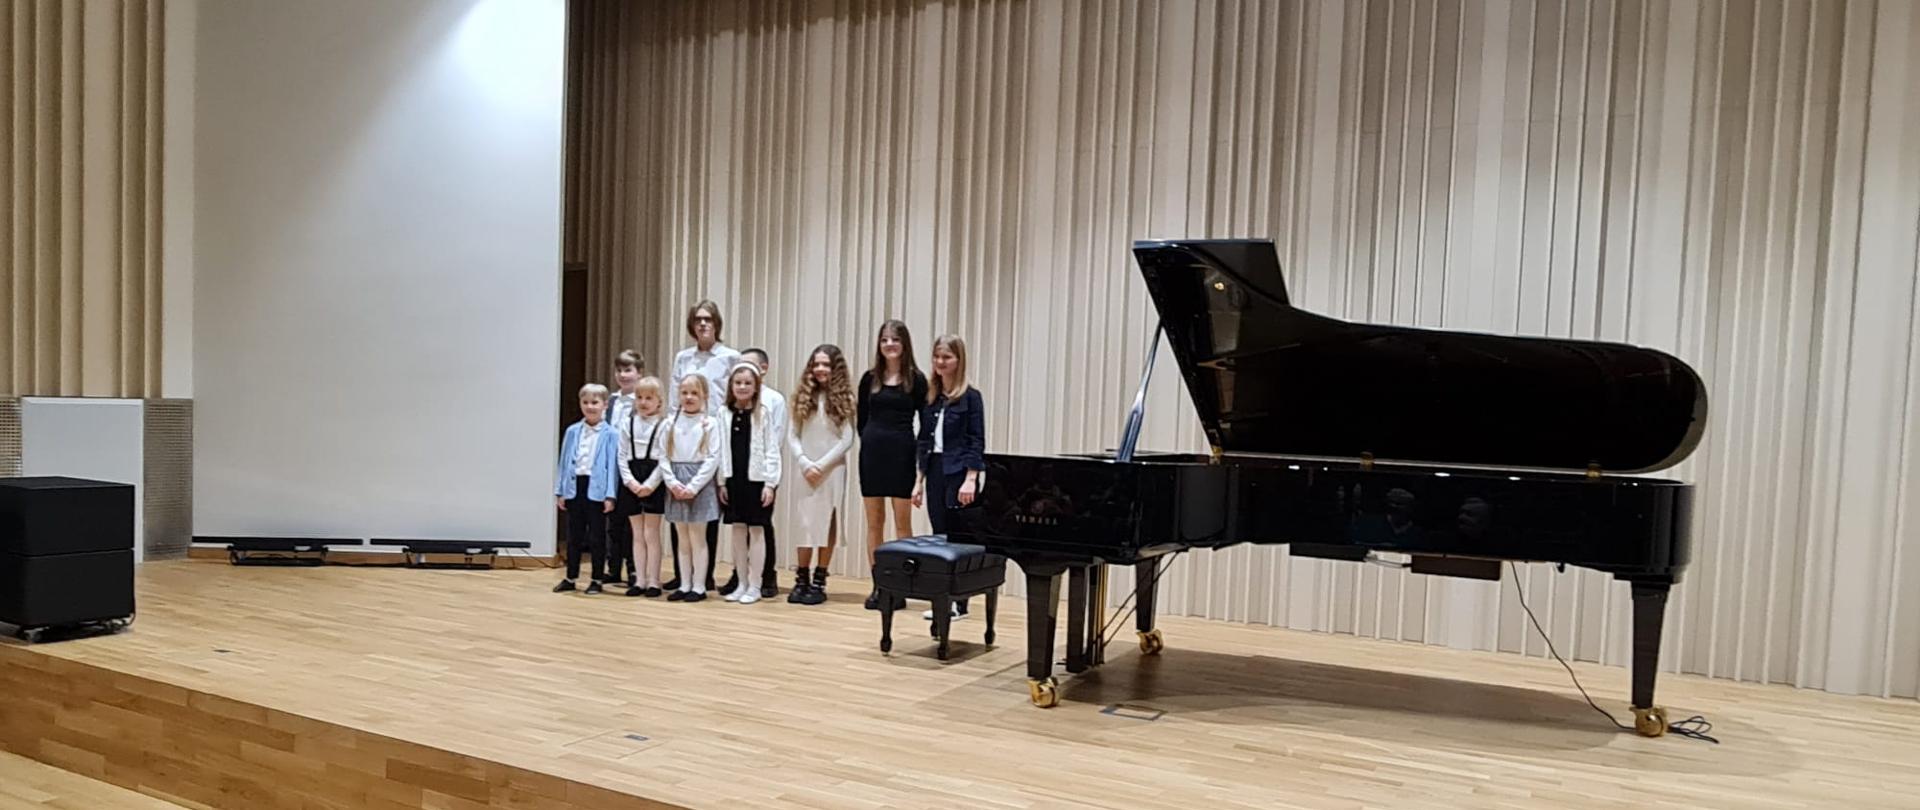 Na zdjęciu grupa odświętnie ubranych uczniów, którzy wystąpili podczas koncertu fortepianowego. Obok grupy dzieci czarny fortepian. Tło obrazka a odcieniach brązu.